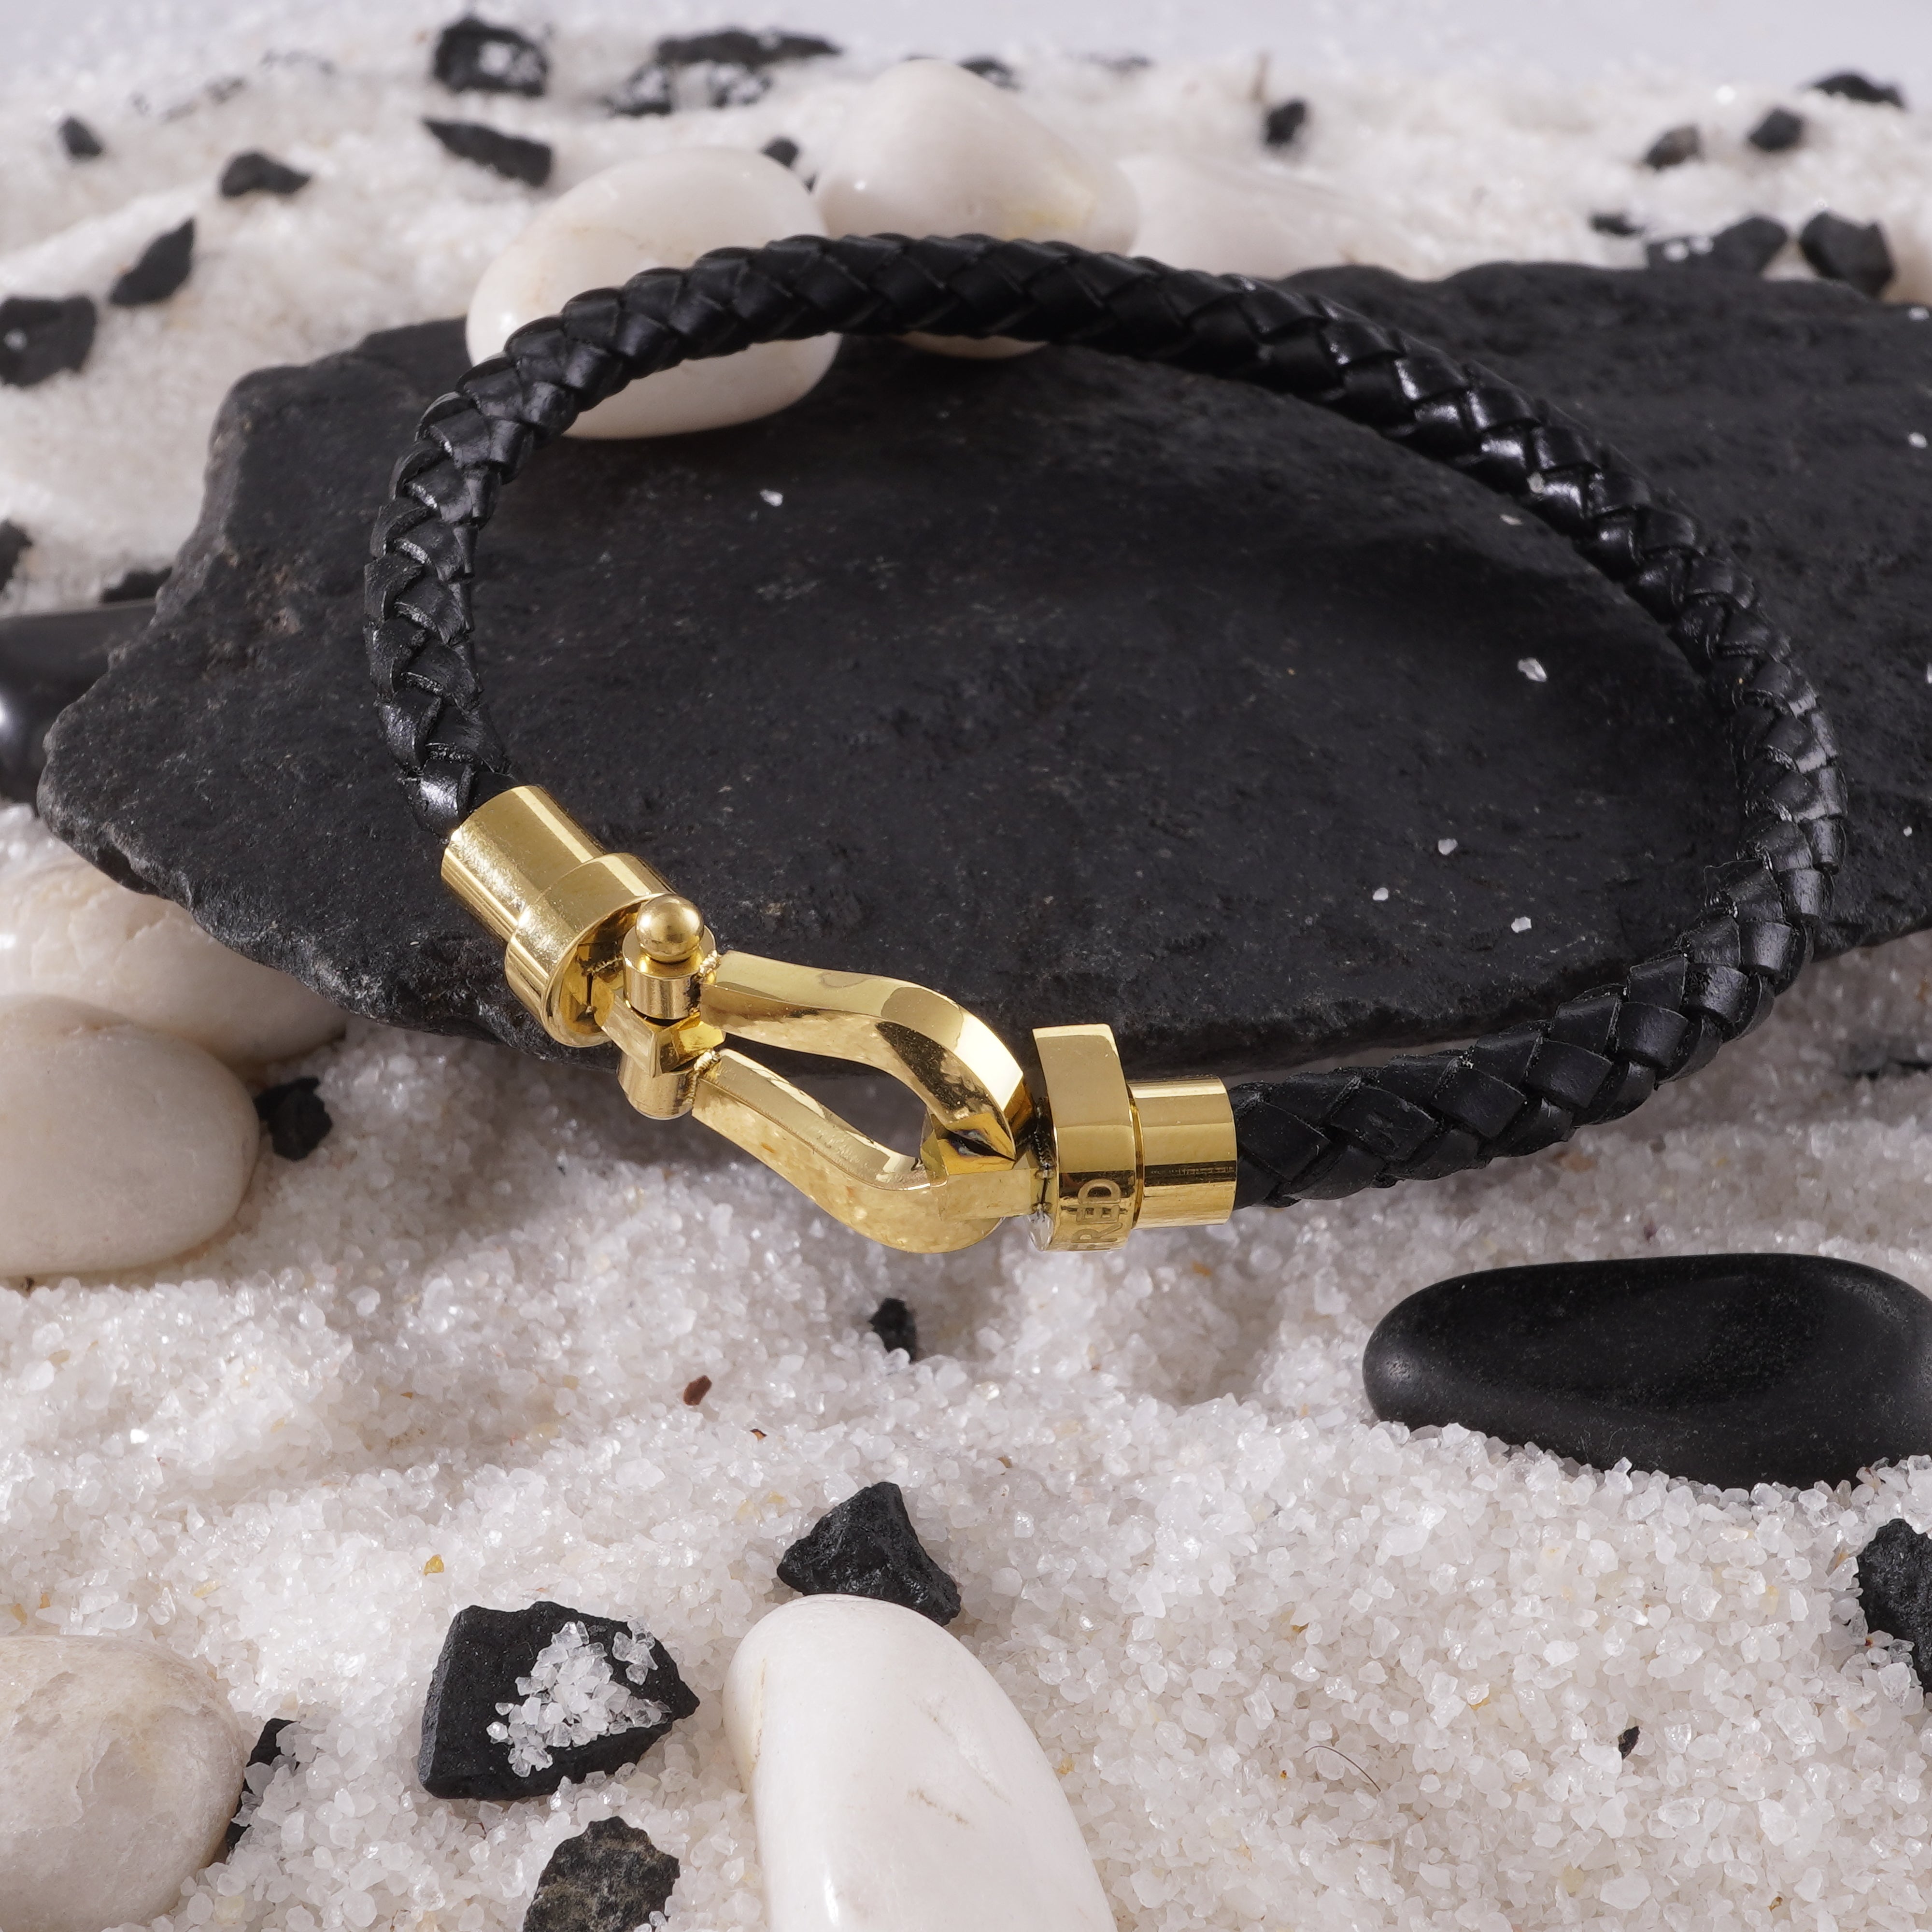 Buy Leather Bracelet For Men At CaratLane - Stylish & Masculine Designs